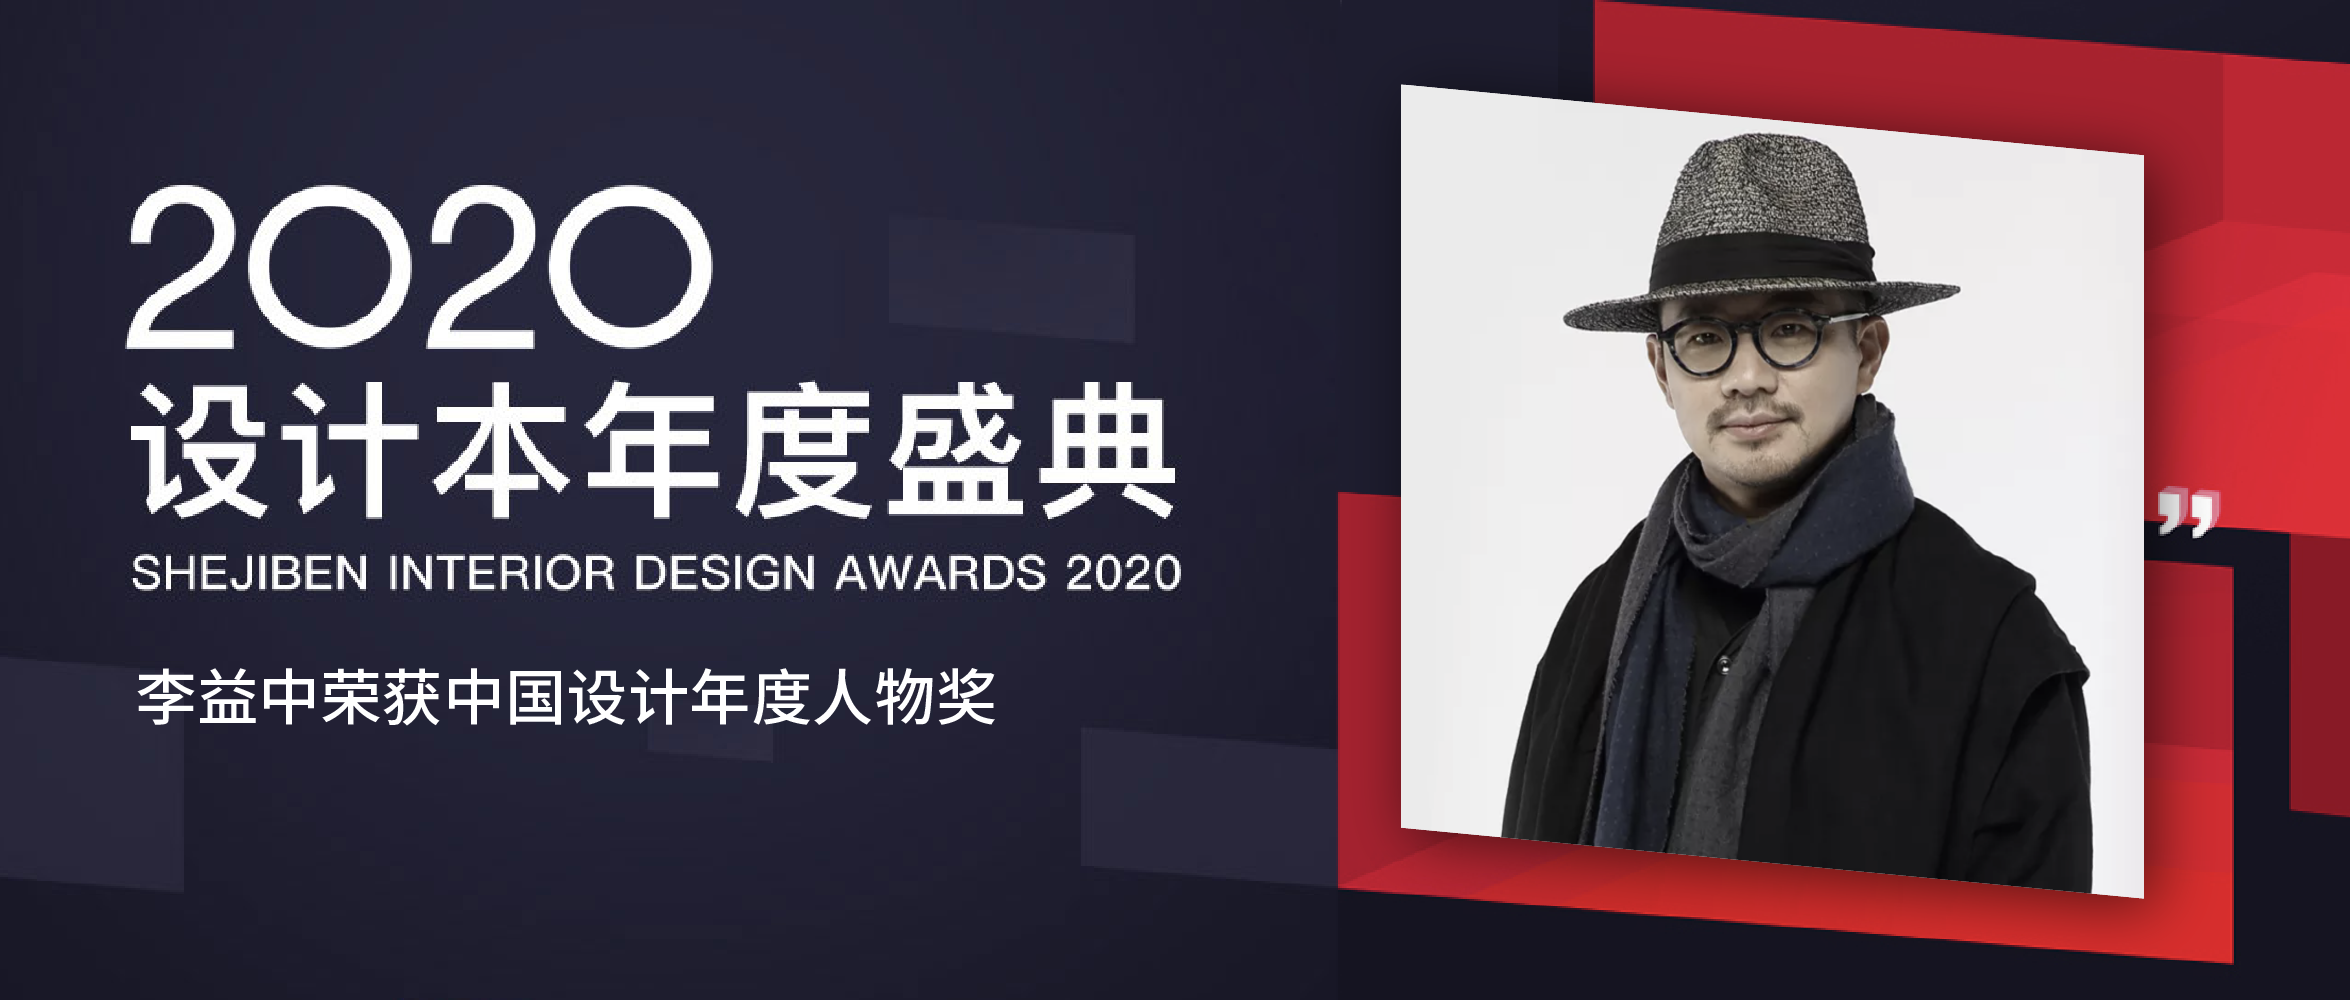 快讯丨李益中荣获2020中国设计本年度人物奖